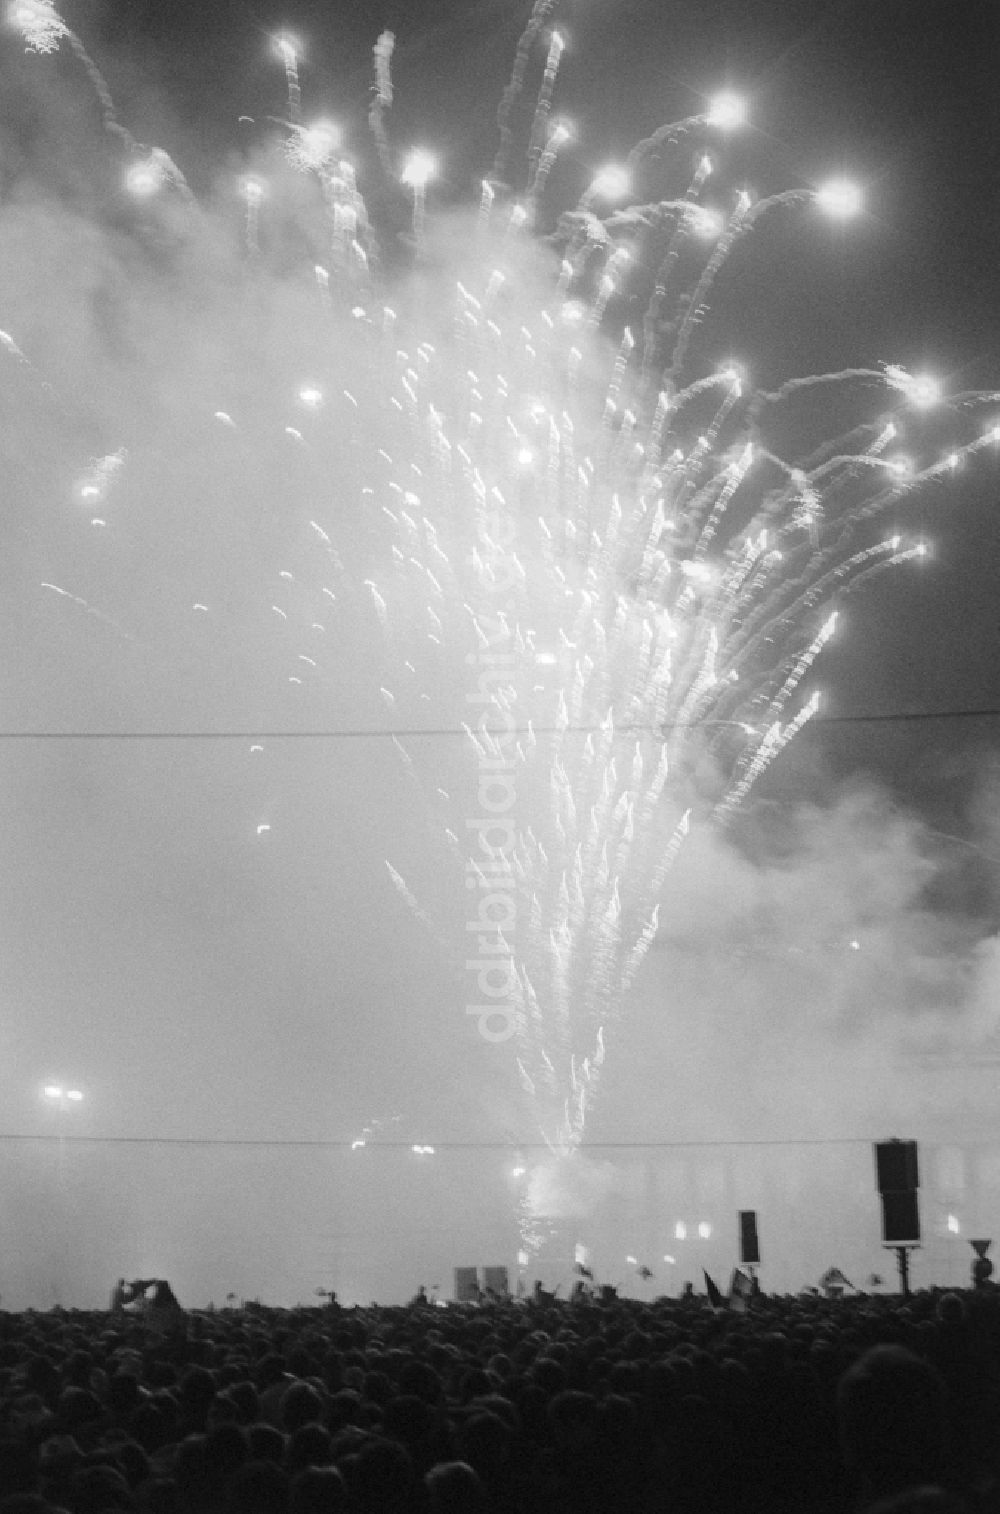 Berlin: Feuerwerk zum Abschluß des Pfingsttreffens der Jugend in Berlin, der ehemaligen Hauptstadt der DDR, Deutsche Demokratische Republik